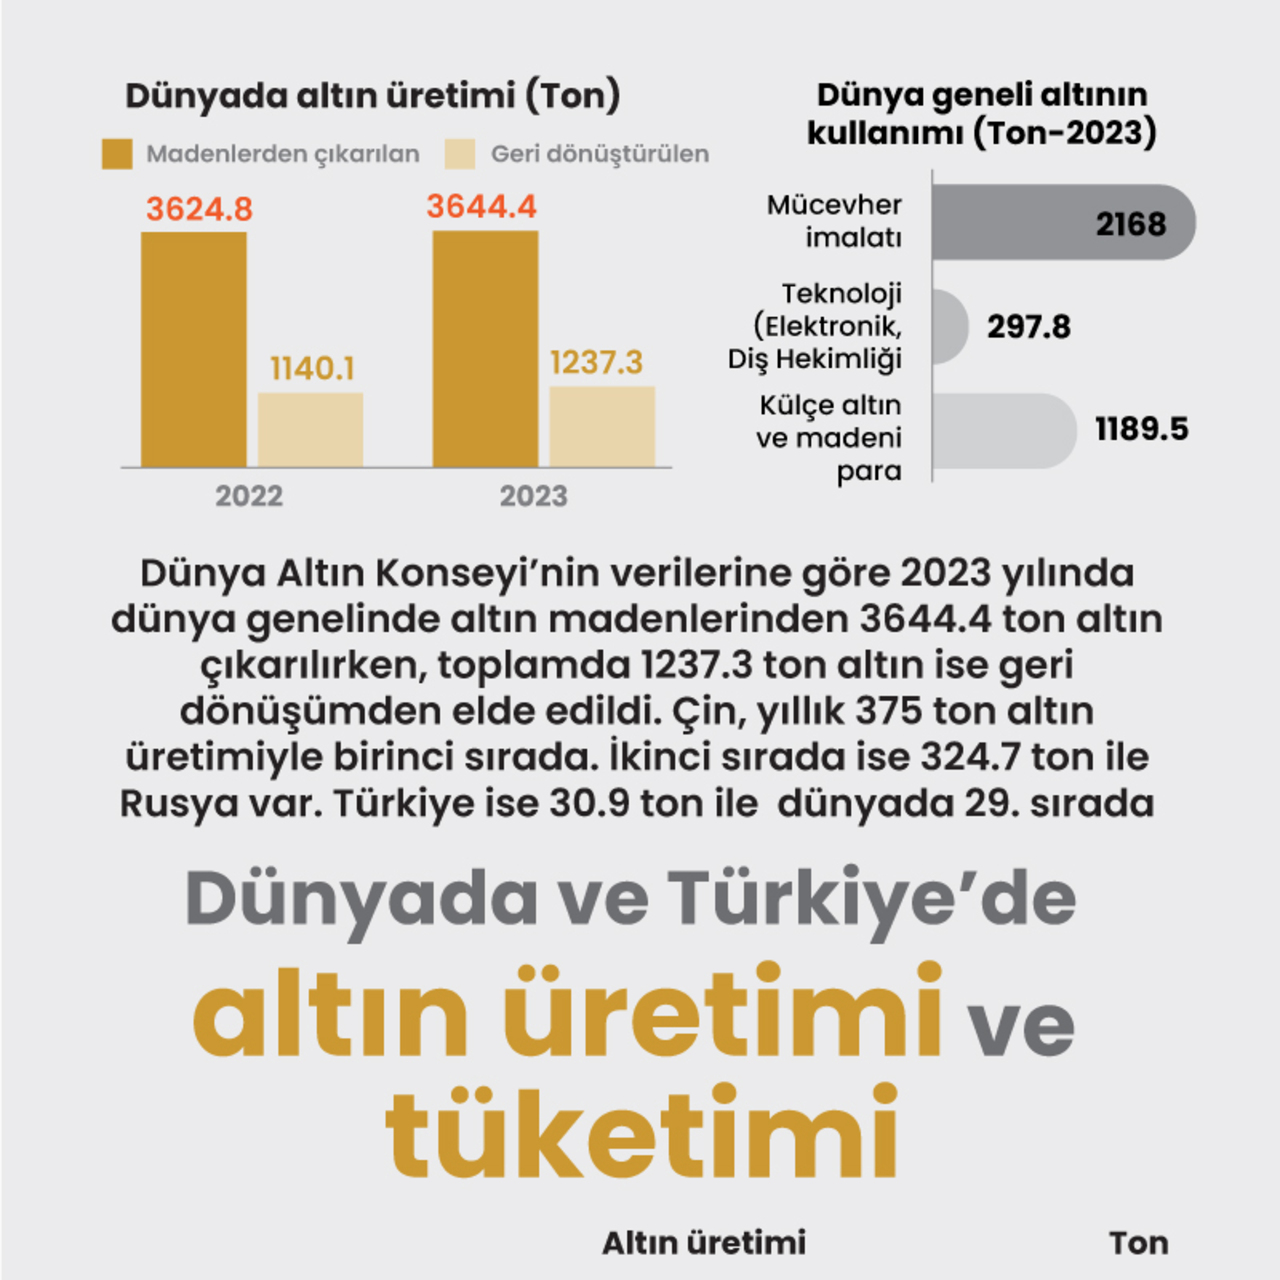 Dünya’da ve Türkiye’de altın üretimi ve tüketimi